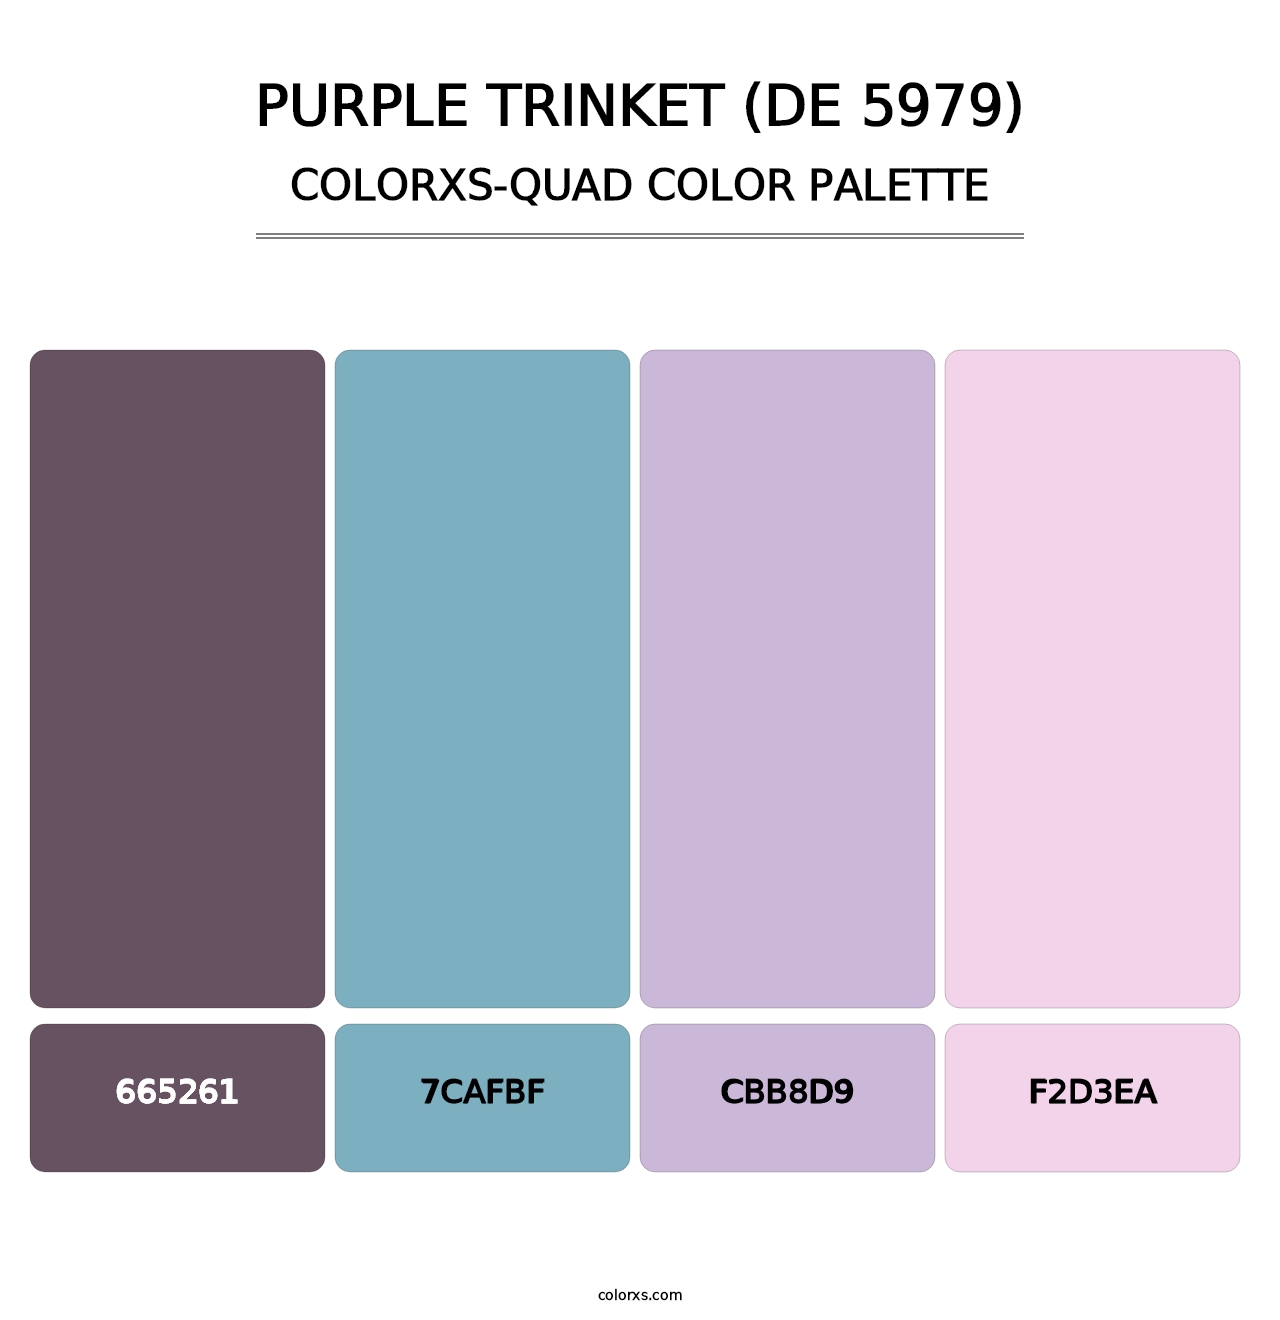 Purple Trinket (DE 5979) - Colorxs Quad Palette